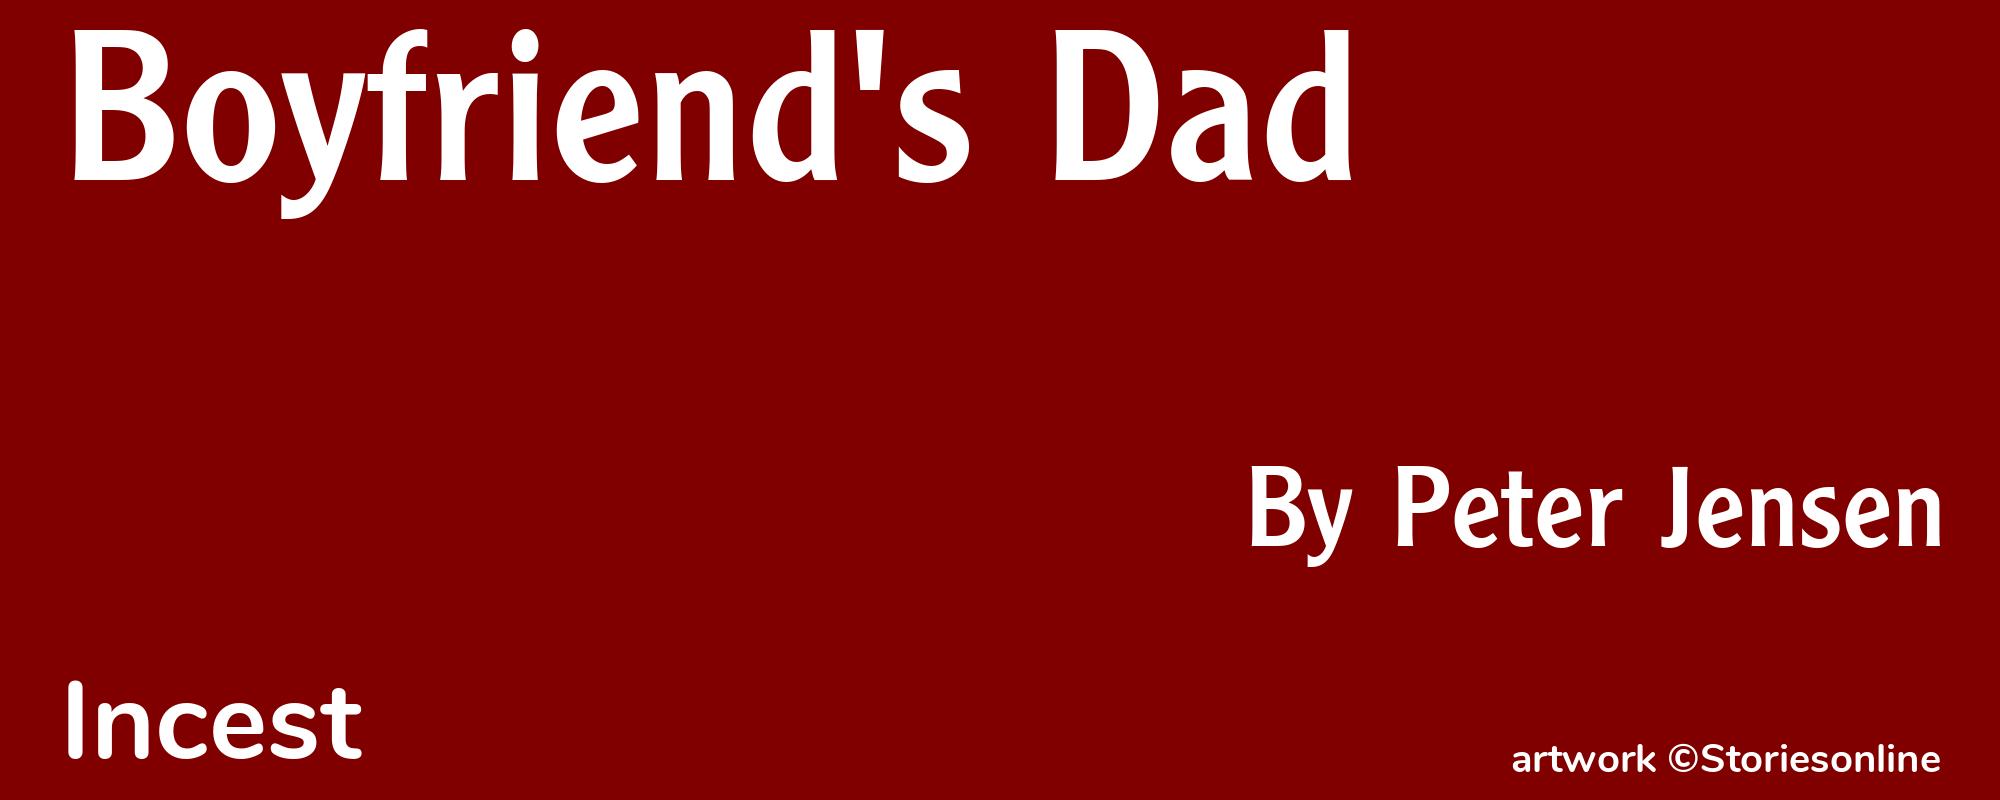 Boyfriend's Dad - Cover